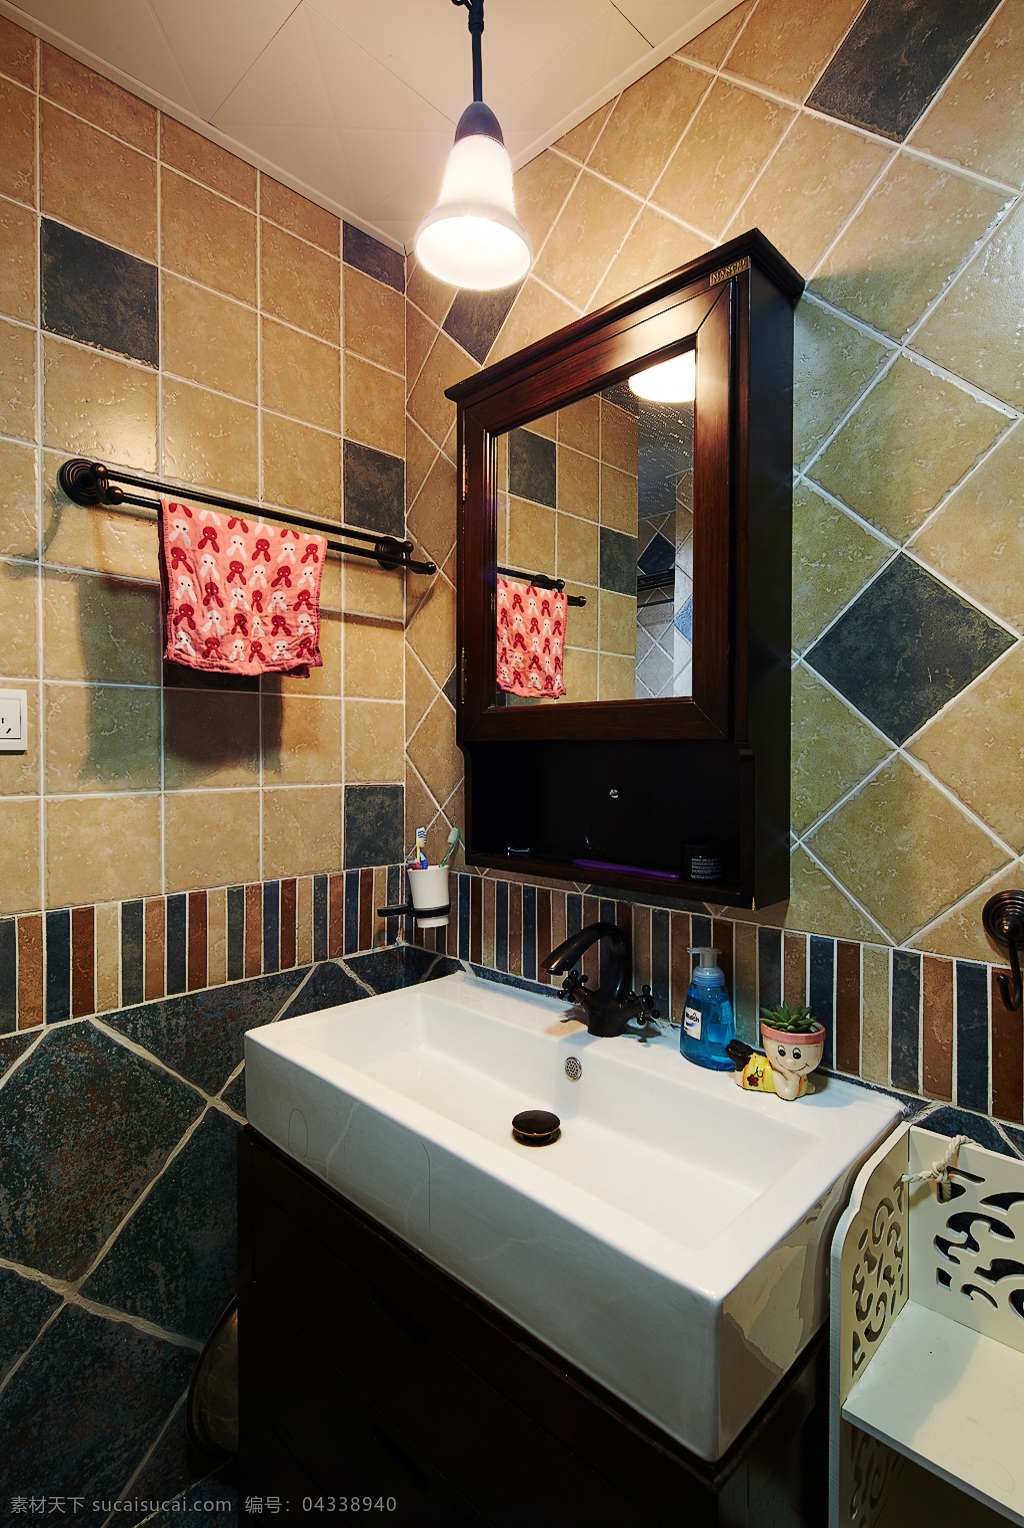 美式 创意 卫生间 设计图 家居 家居生活 室内设计 装修 室内 家具 装修设计 环境设计 瓷砖 洗手台